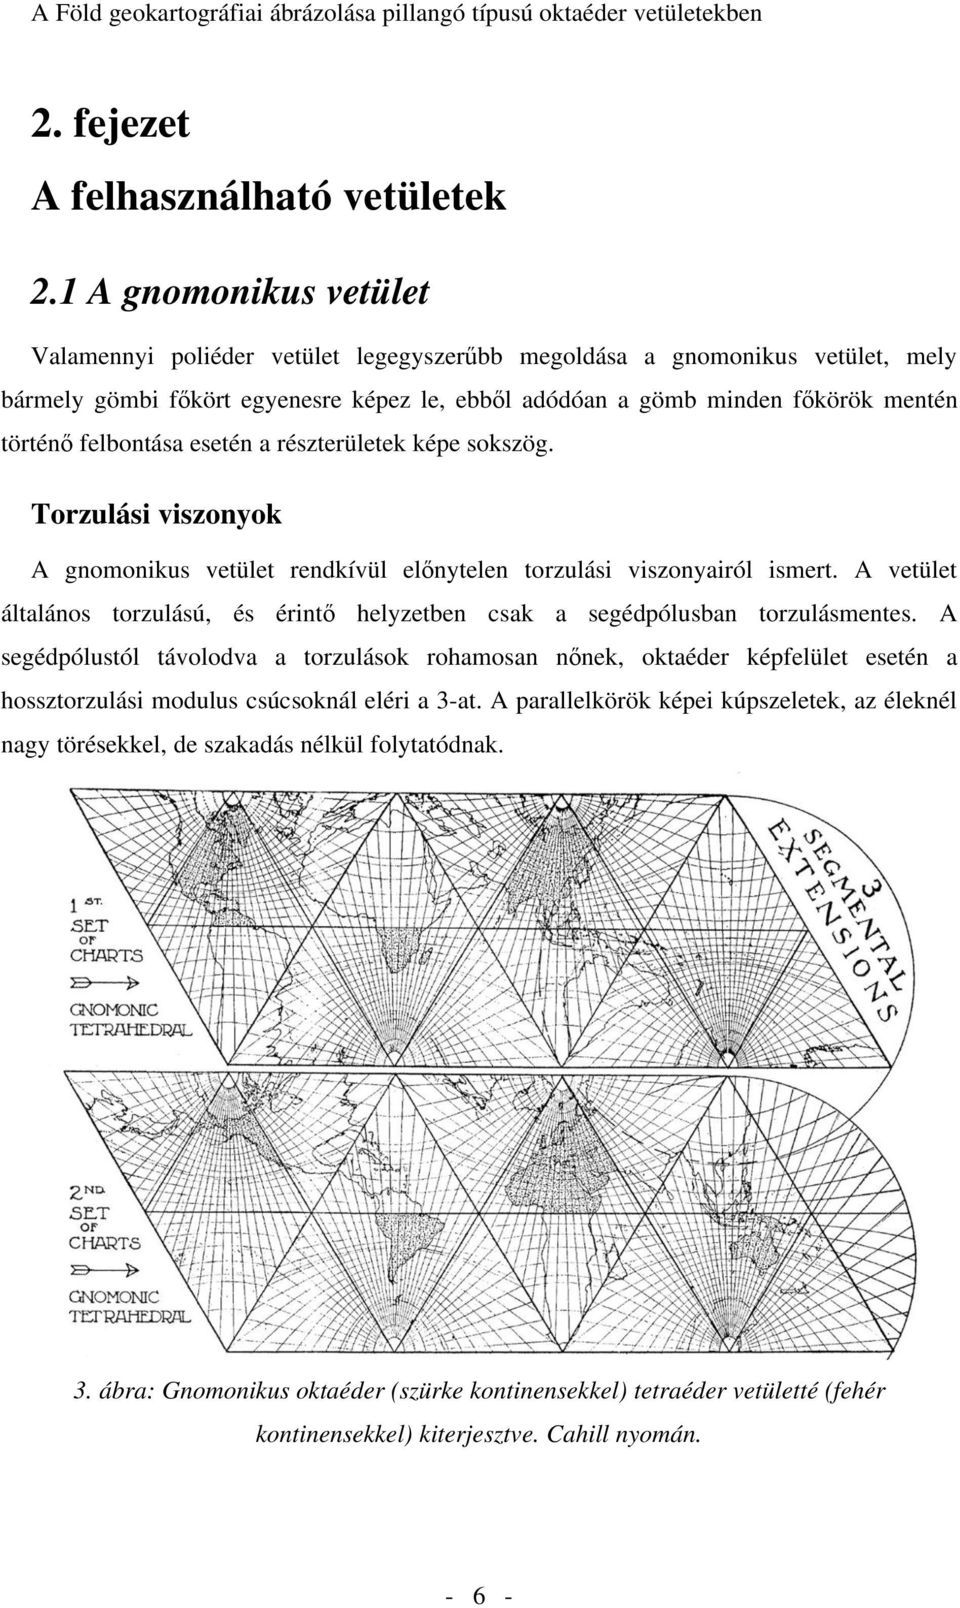 A Föld geokartográfiai ábrázolása pillangó típusú oktaéder vetületekben -  PDF Free Download